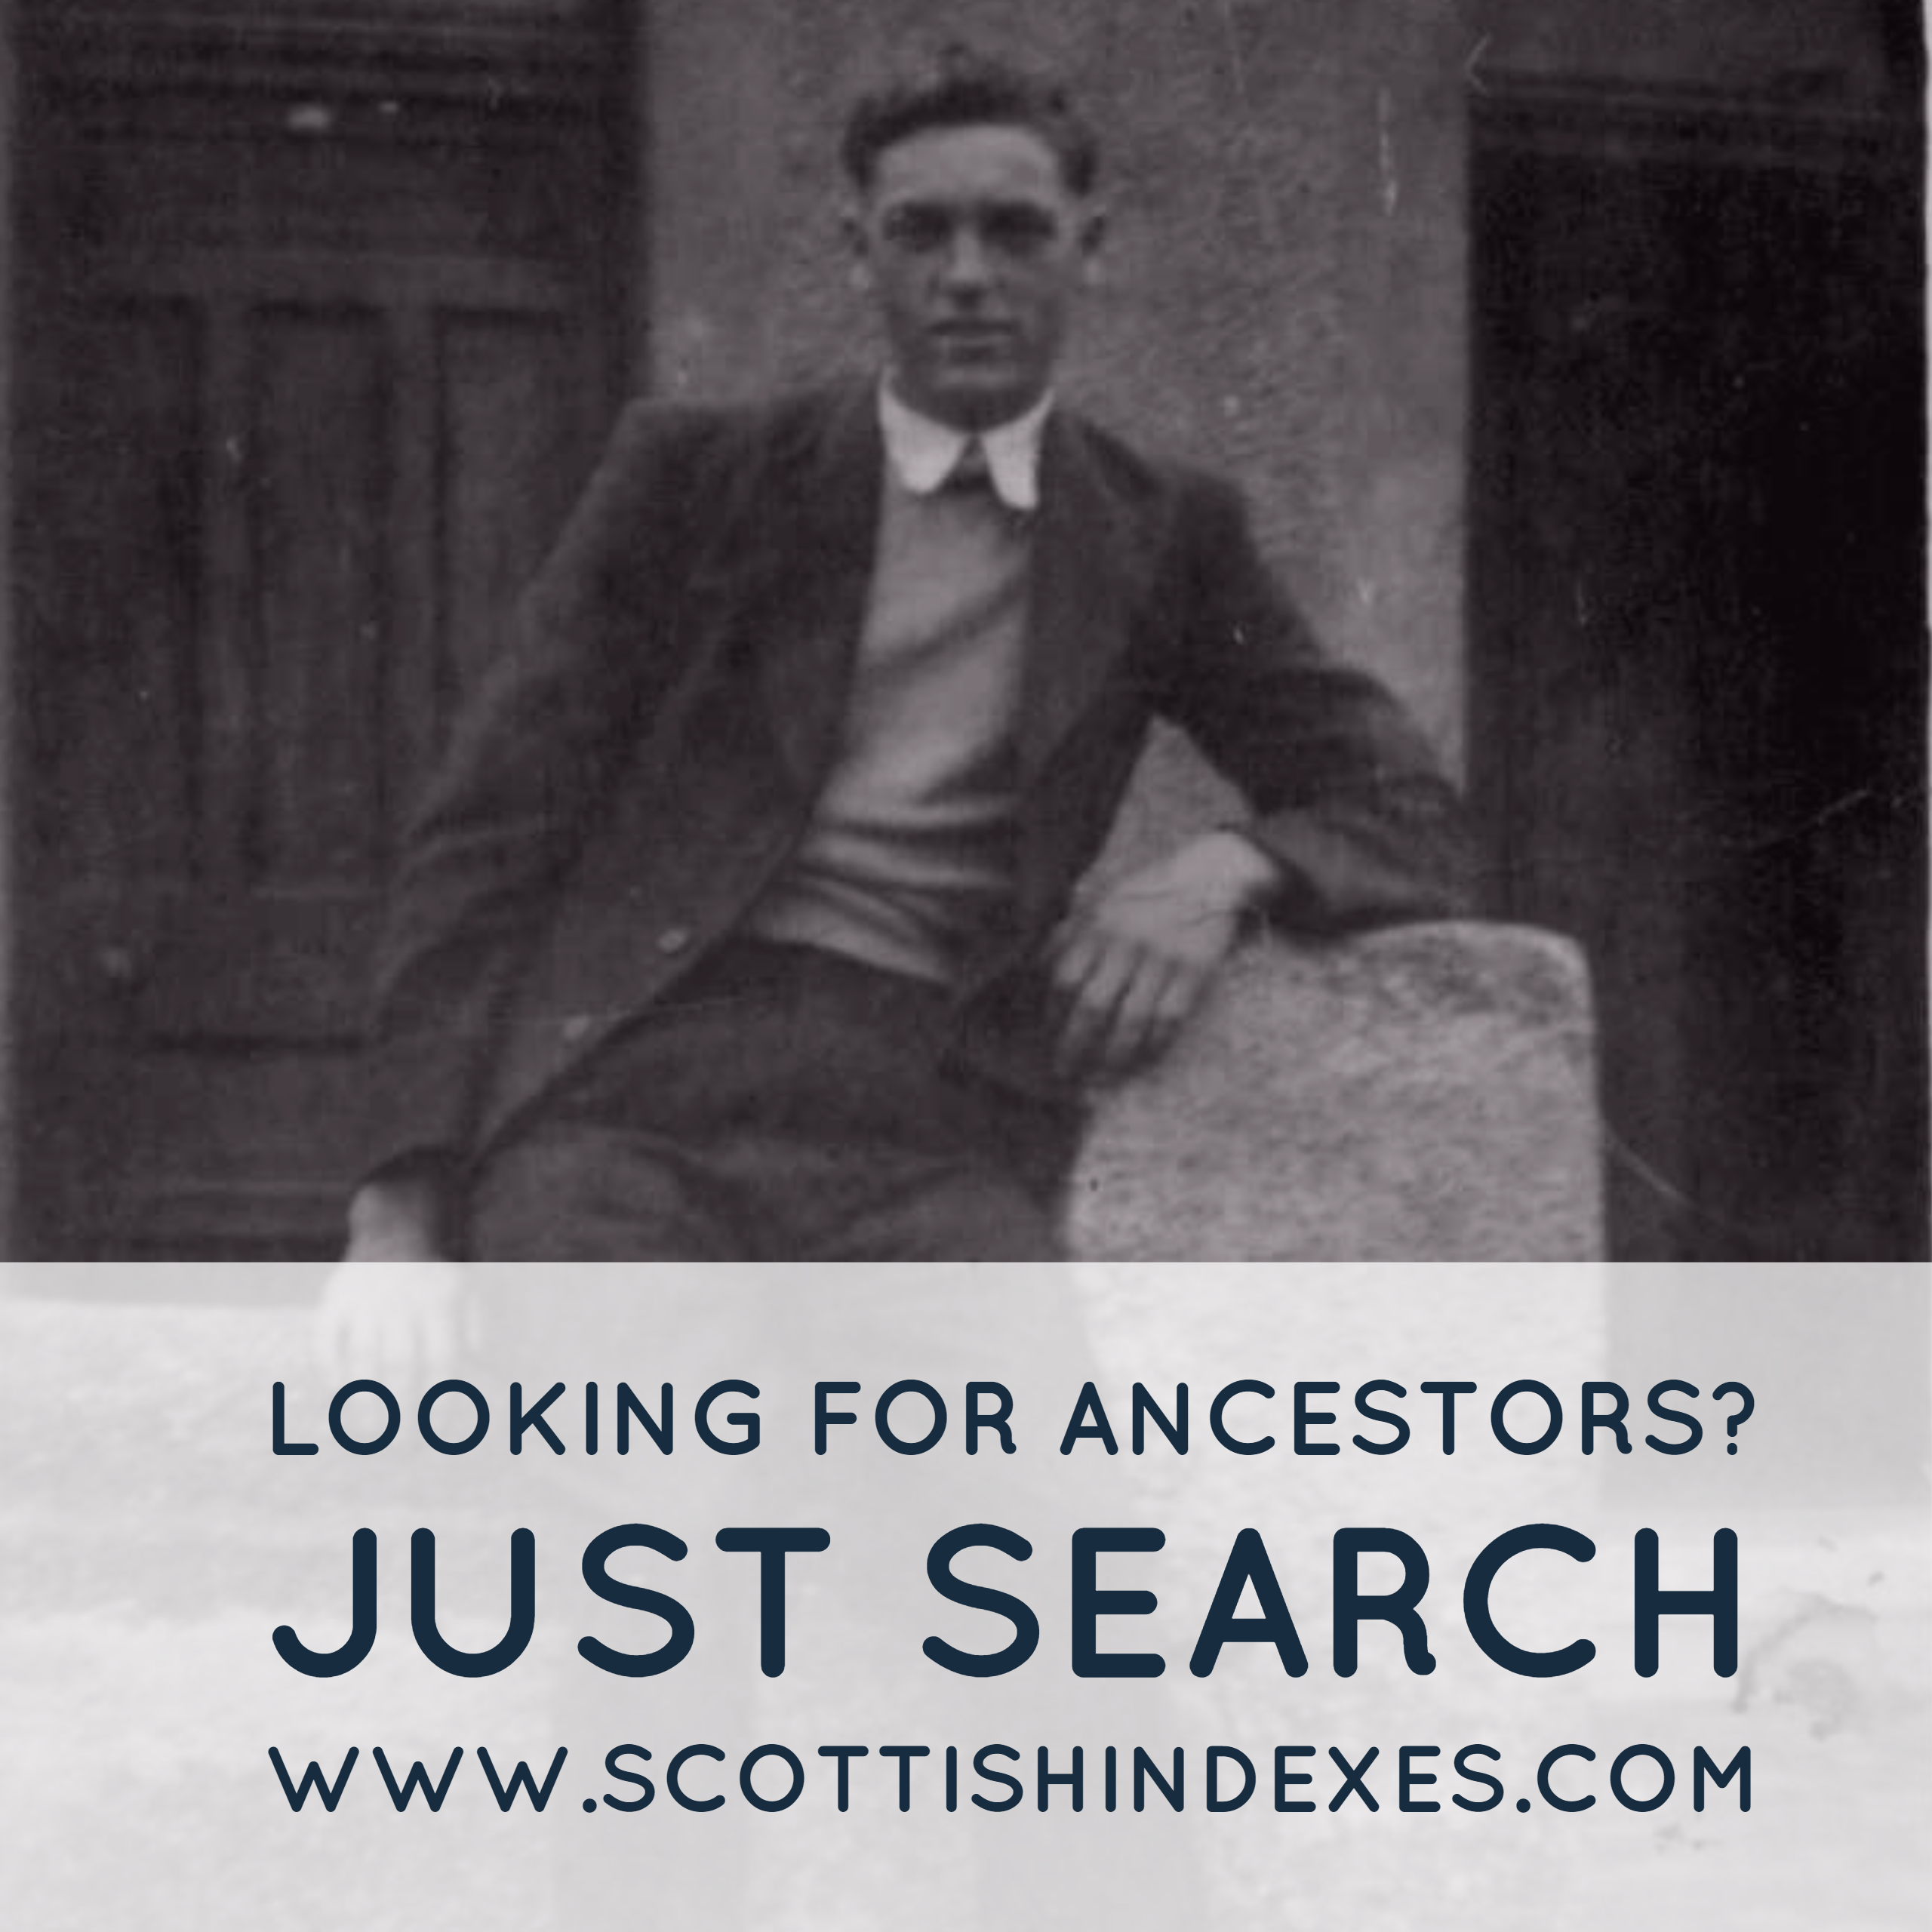 Search for Scottish Ancestors